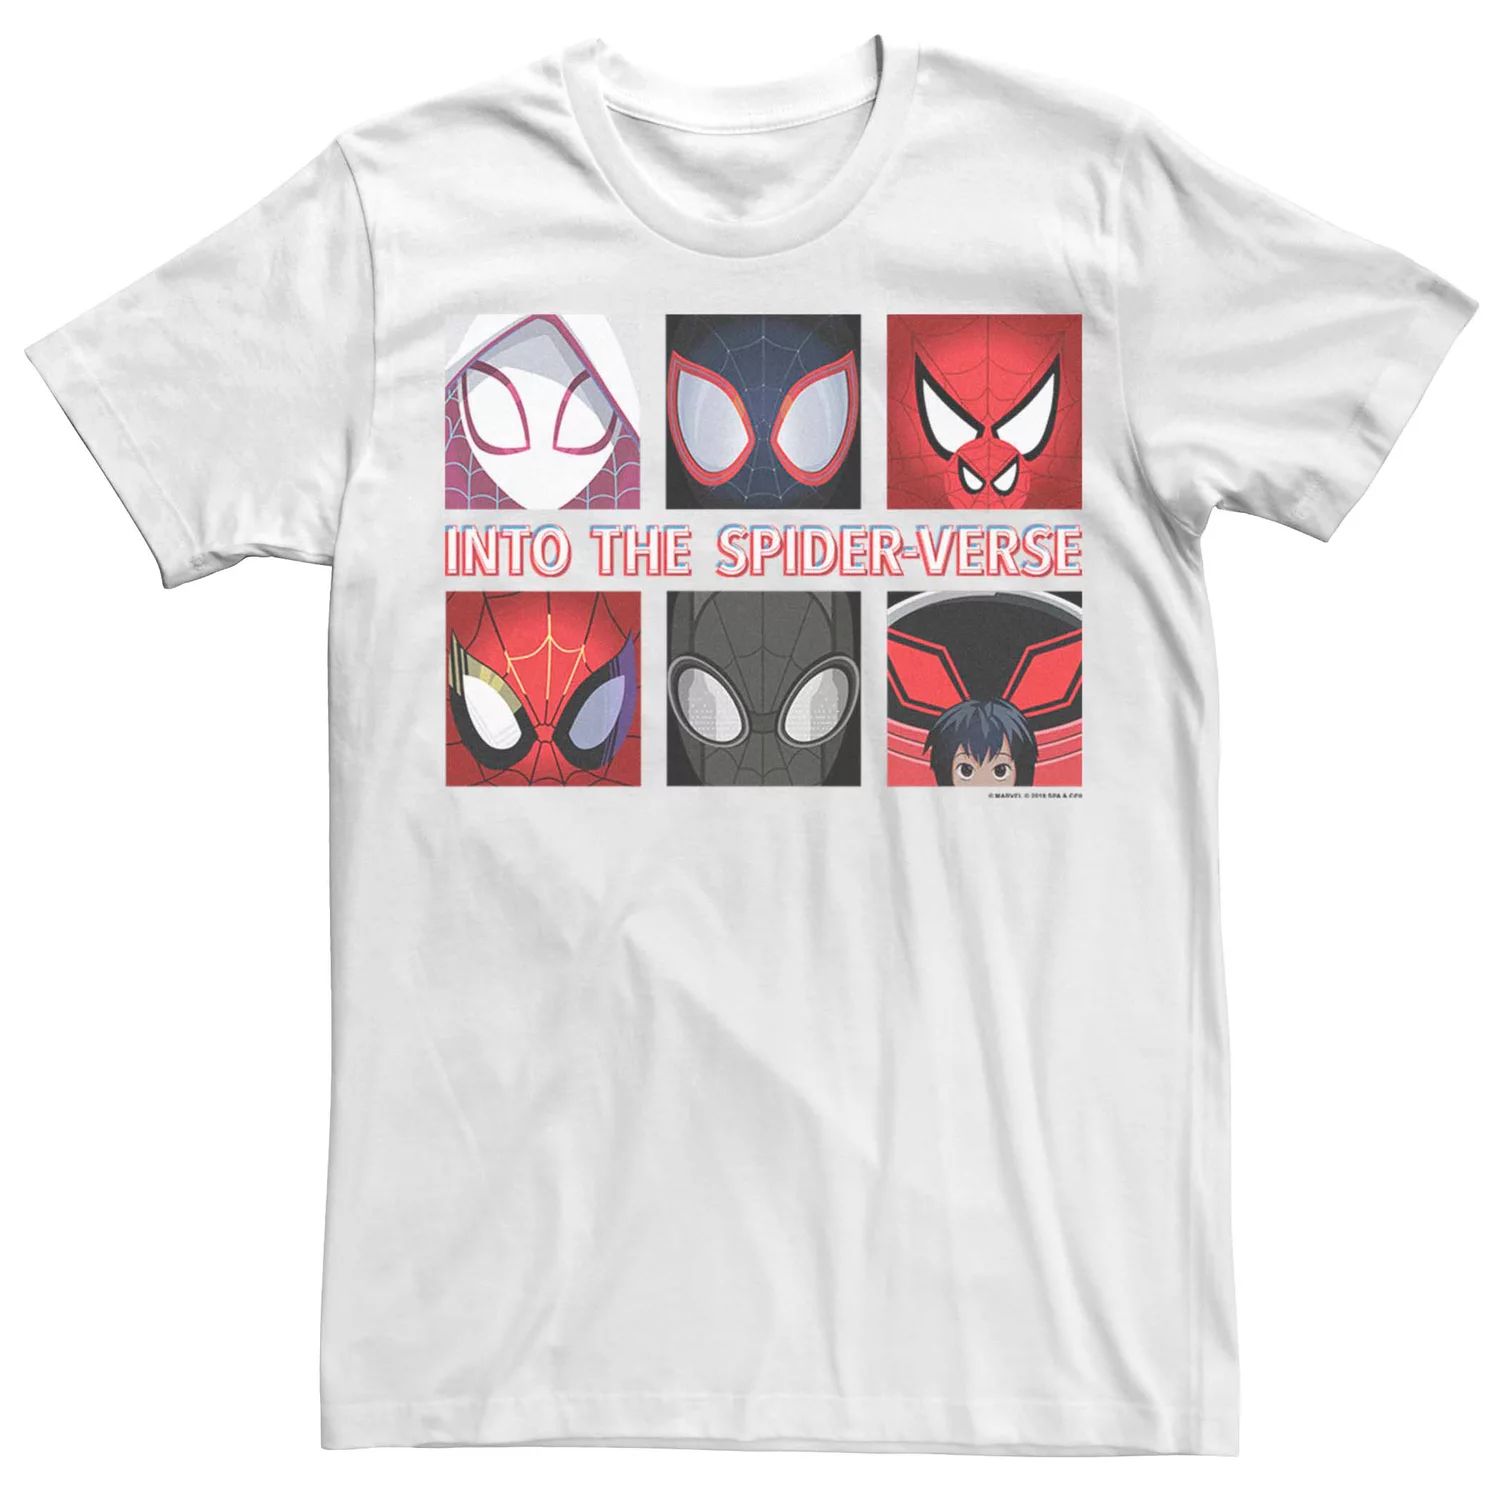 мужская футболка с логотипом marvel into the spider verse spray paint Мужская футболка с вставками в виде персонажей Marvel Into The Spider-Verse Licensed Character